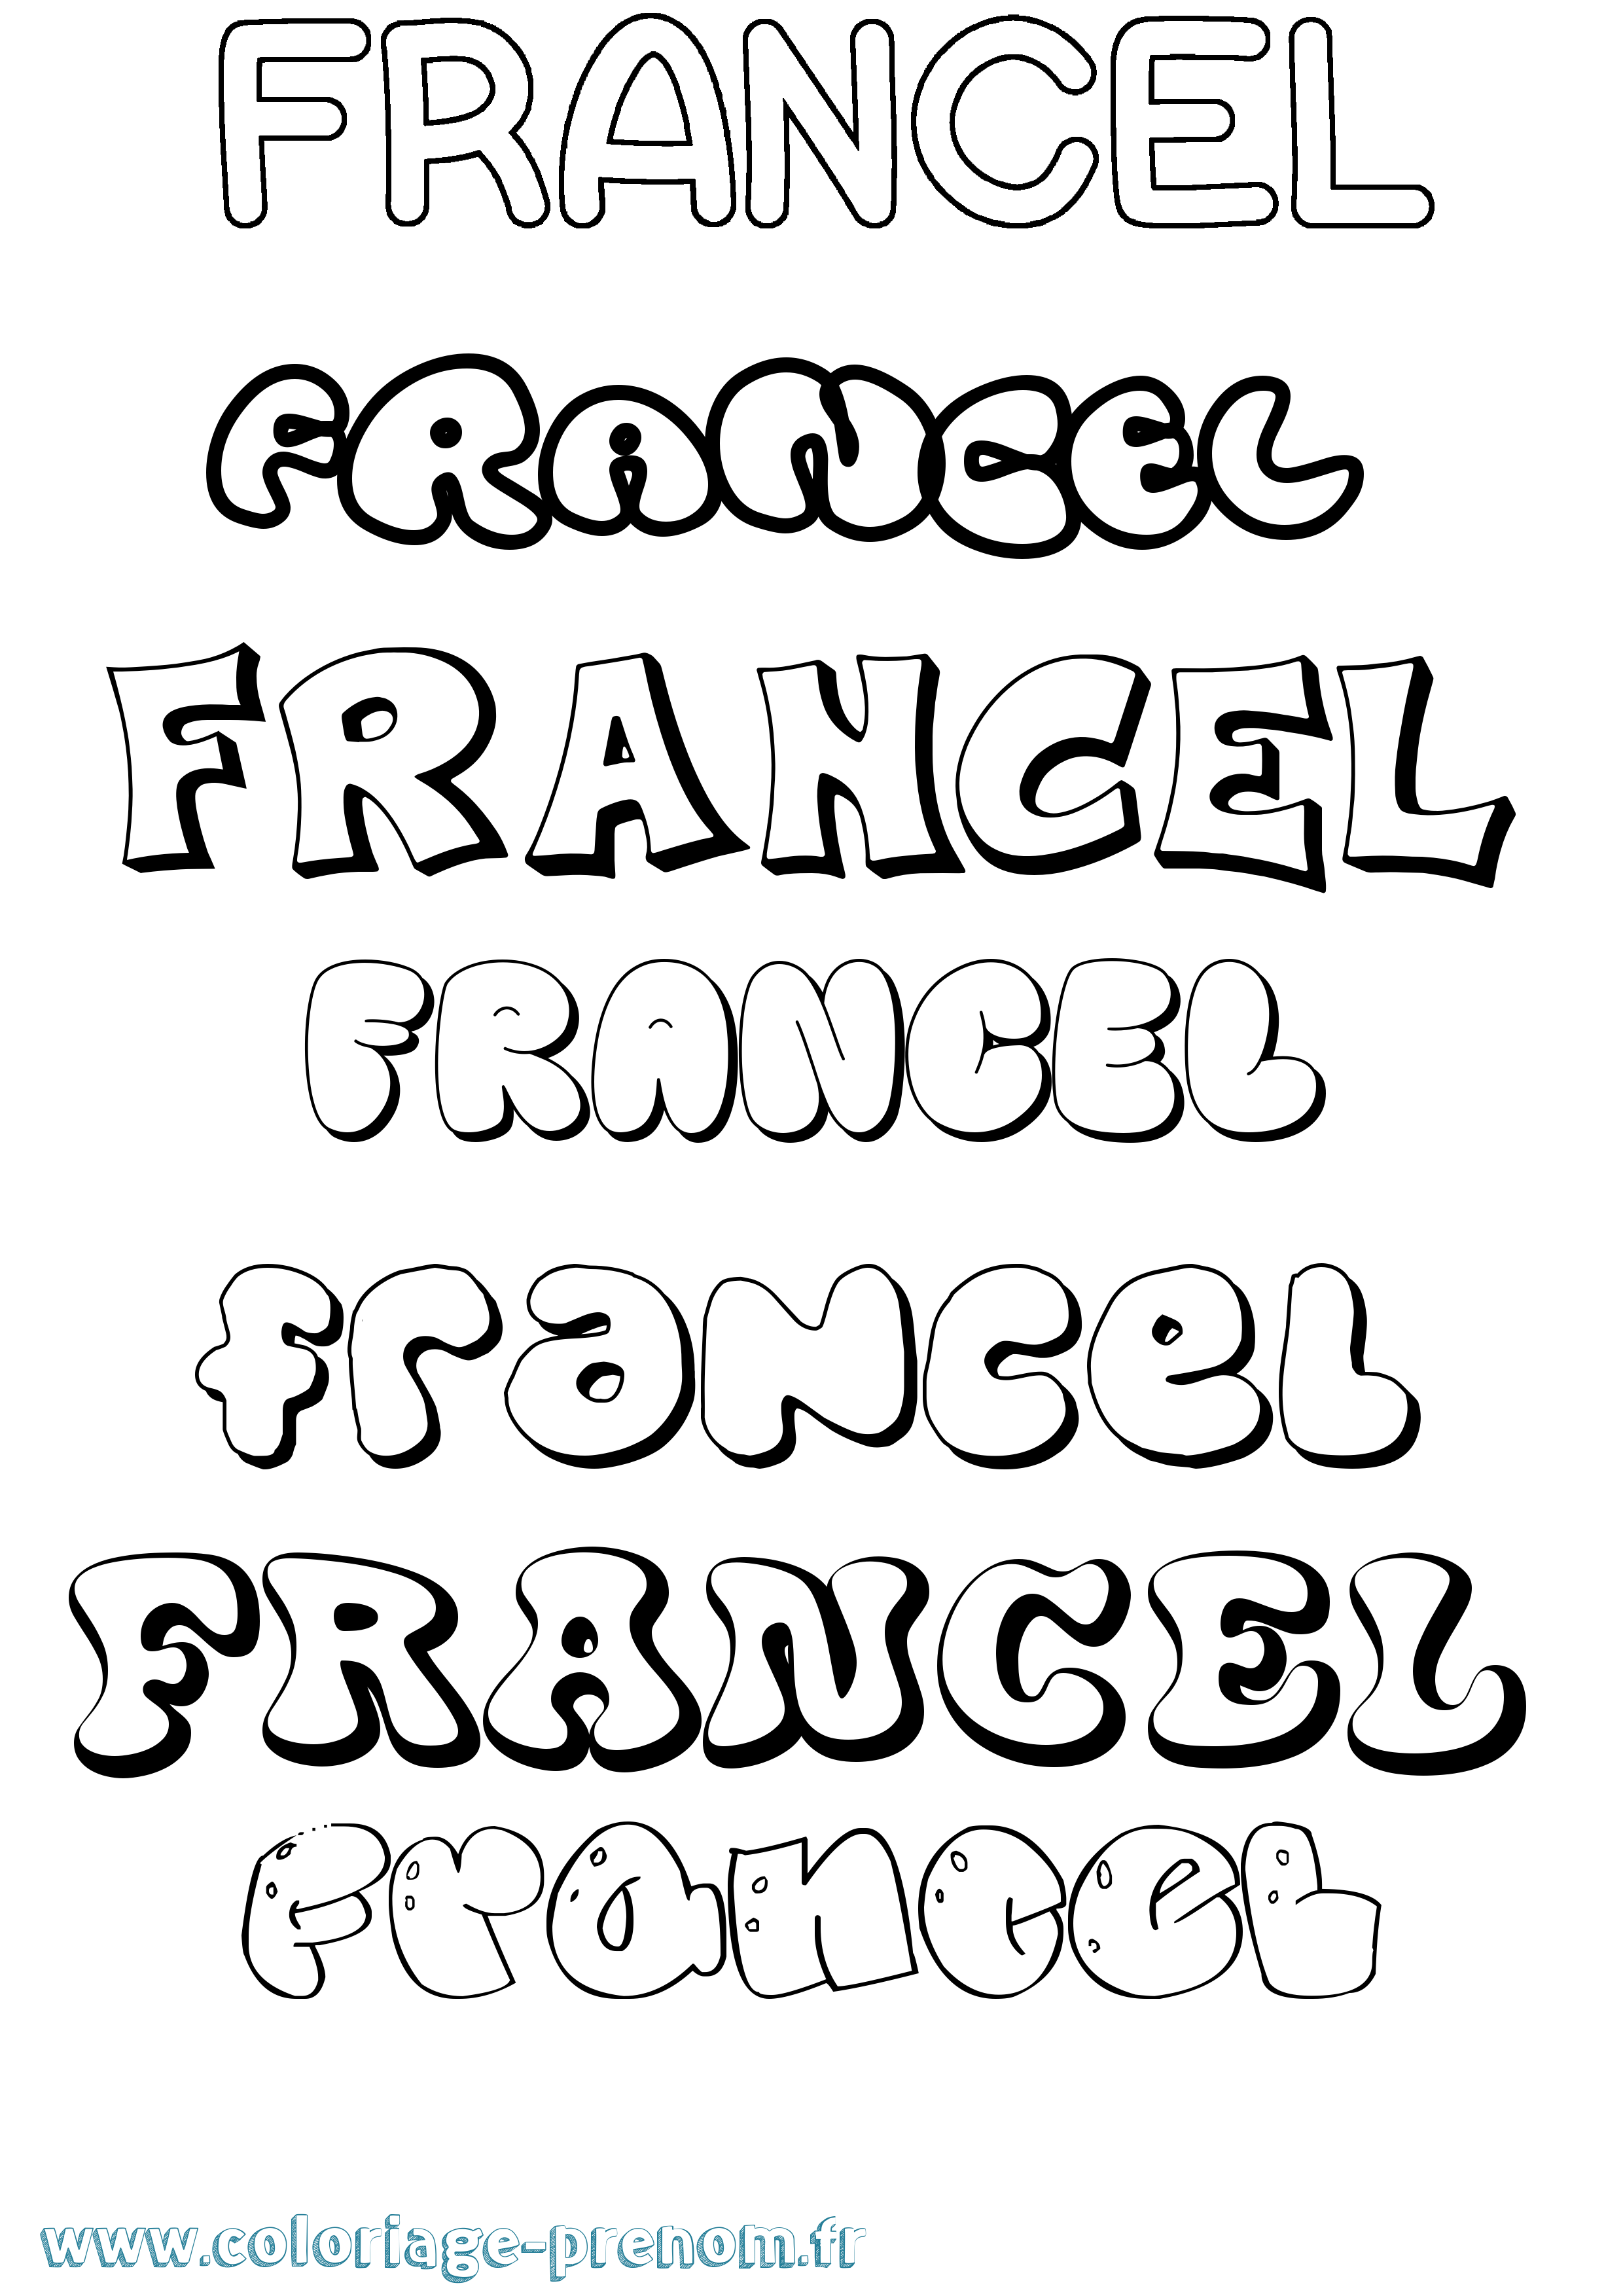 Coloriage prénom Francel Bubble